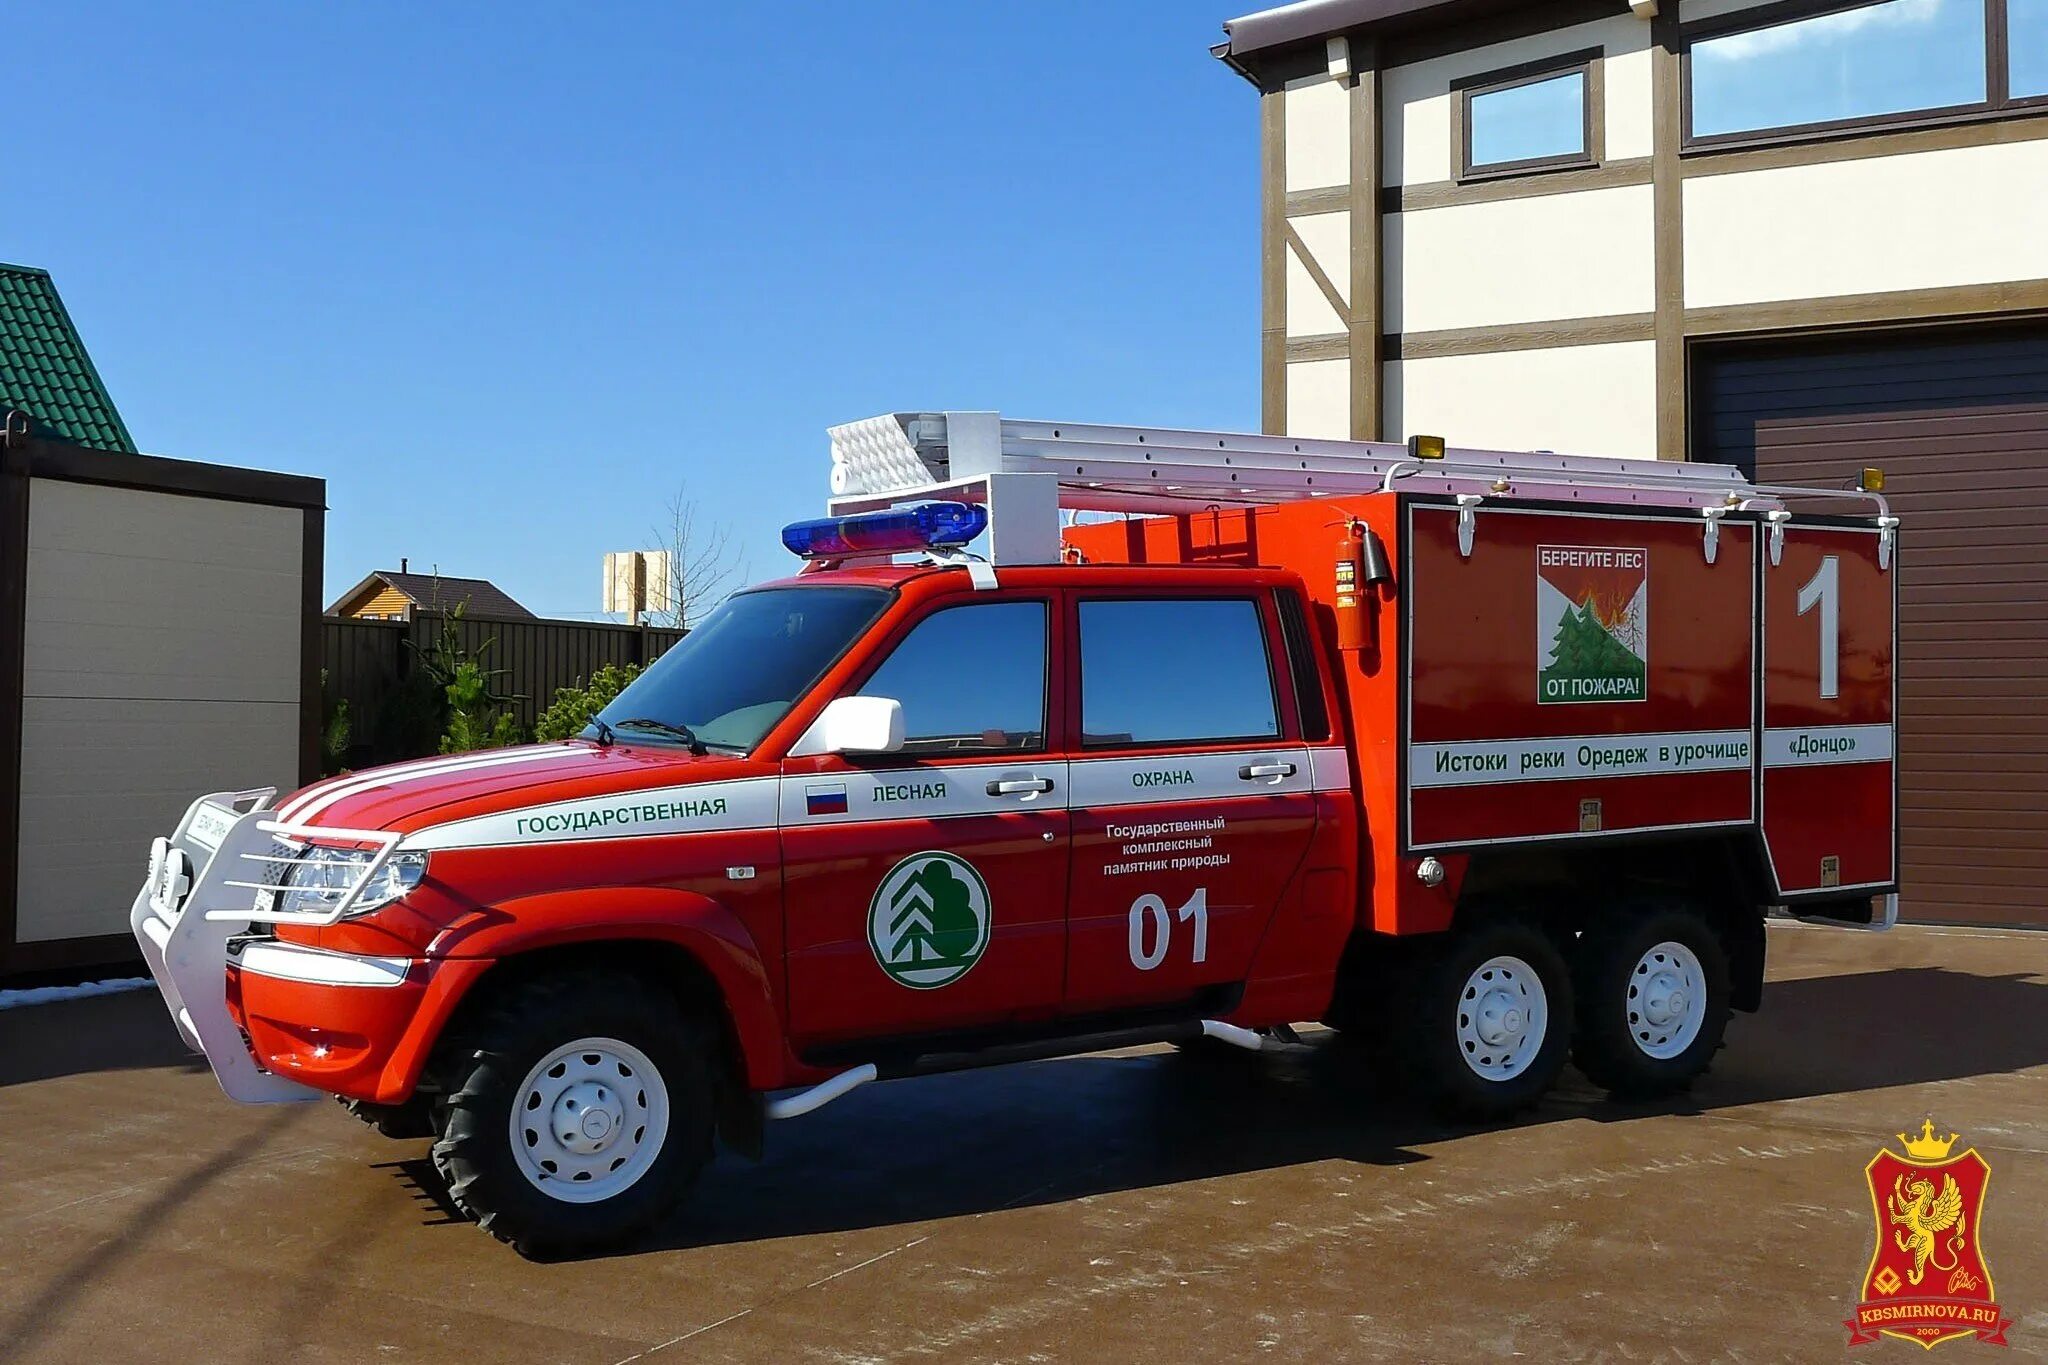 Пожарные оперативные автомобили. УАЗ-236382. УАЗ Патриот пожарный 236382. Пожарный водозащитный автомобиль (АВЗ). УАЗ профи апп пожарная машина.